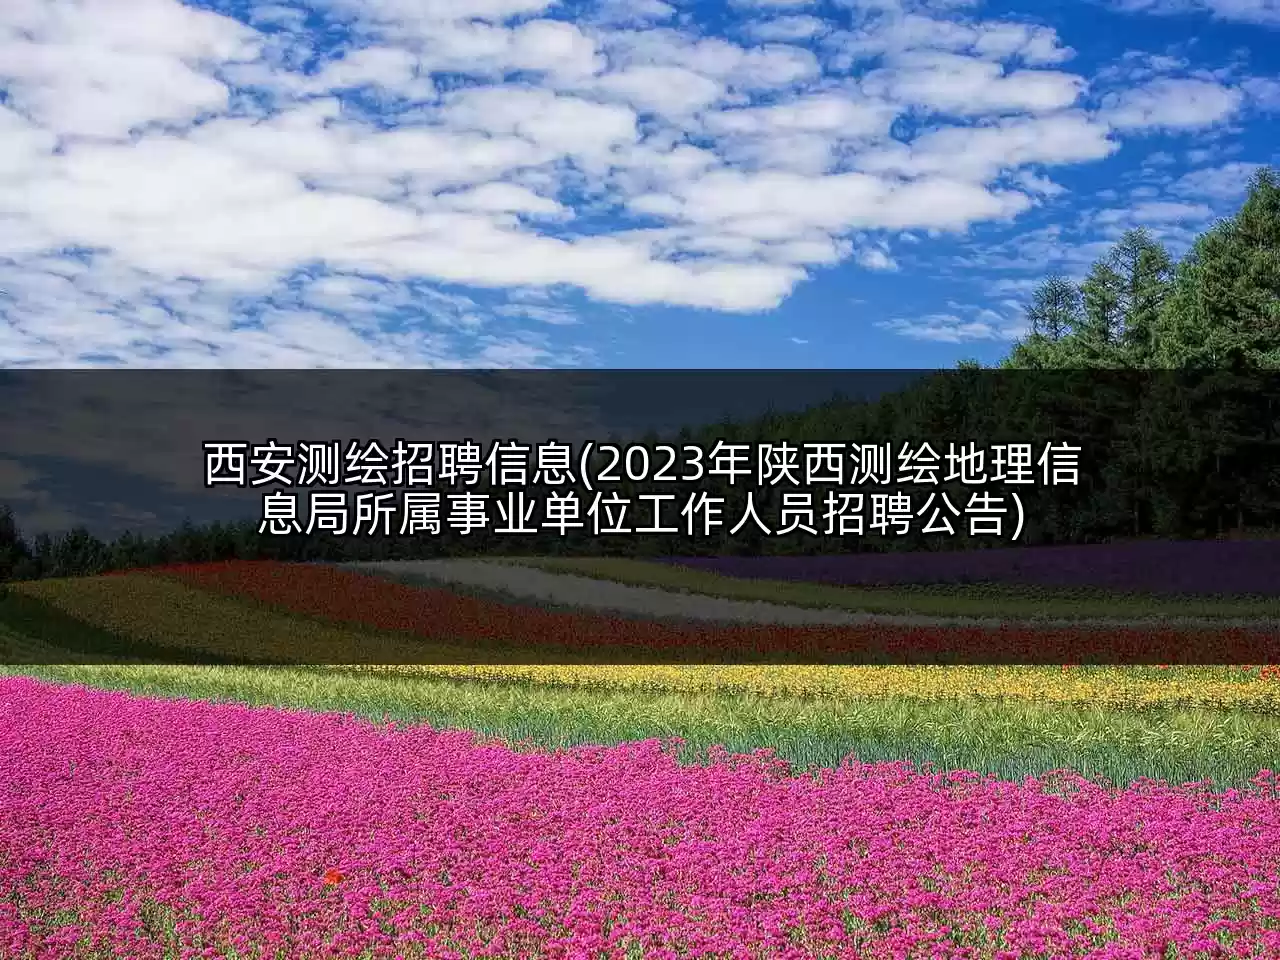 西安测绘招聘信息(2023年陕西测绘地理信息局所属事业单位工作人员招聘公告)